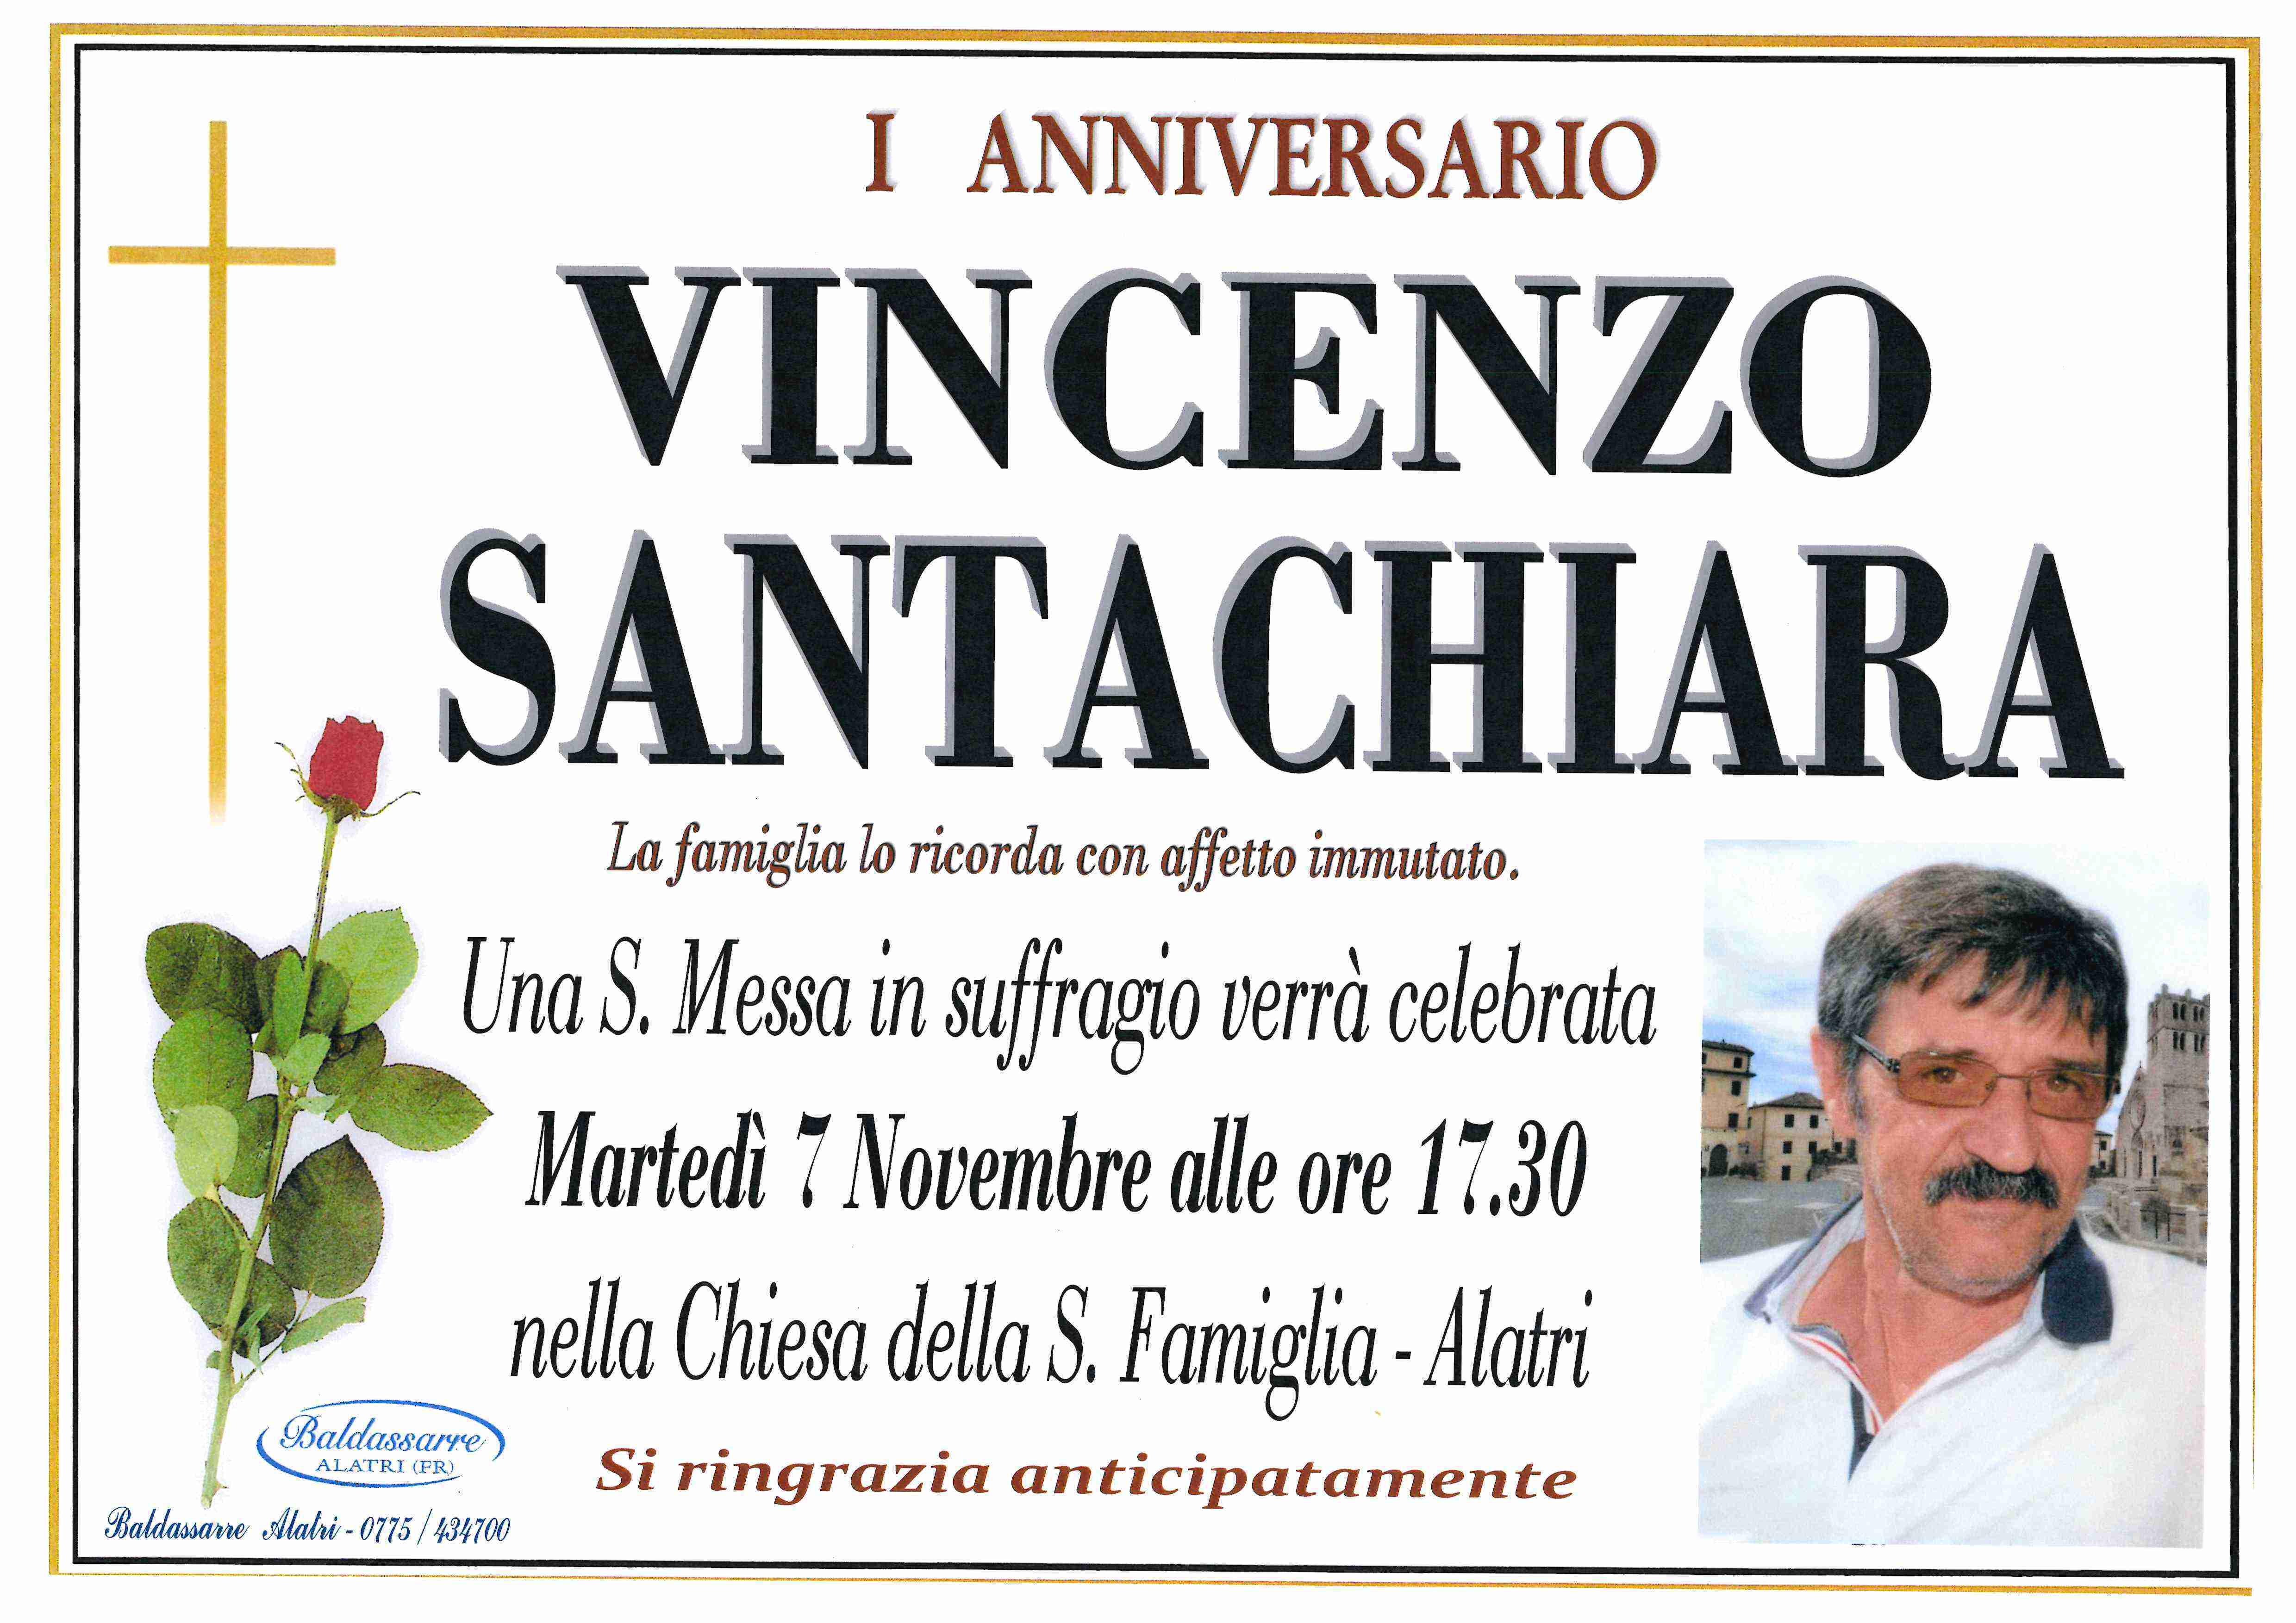 Vincenzo Santachiara